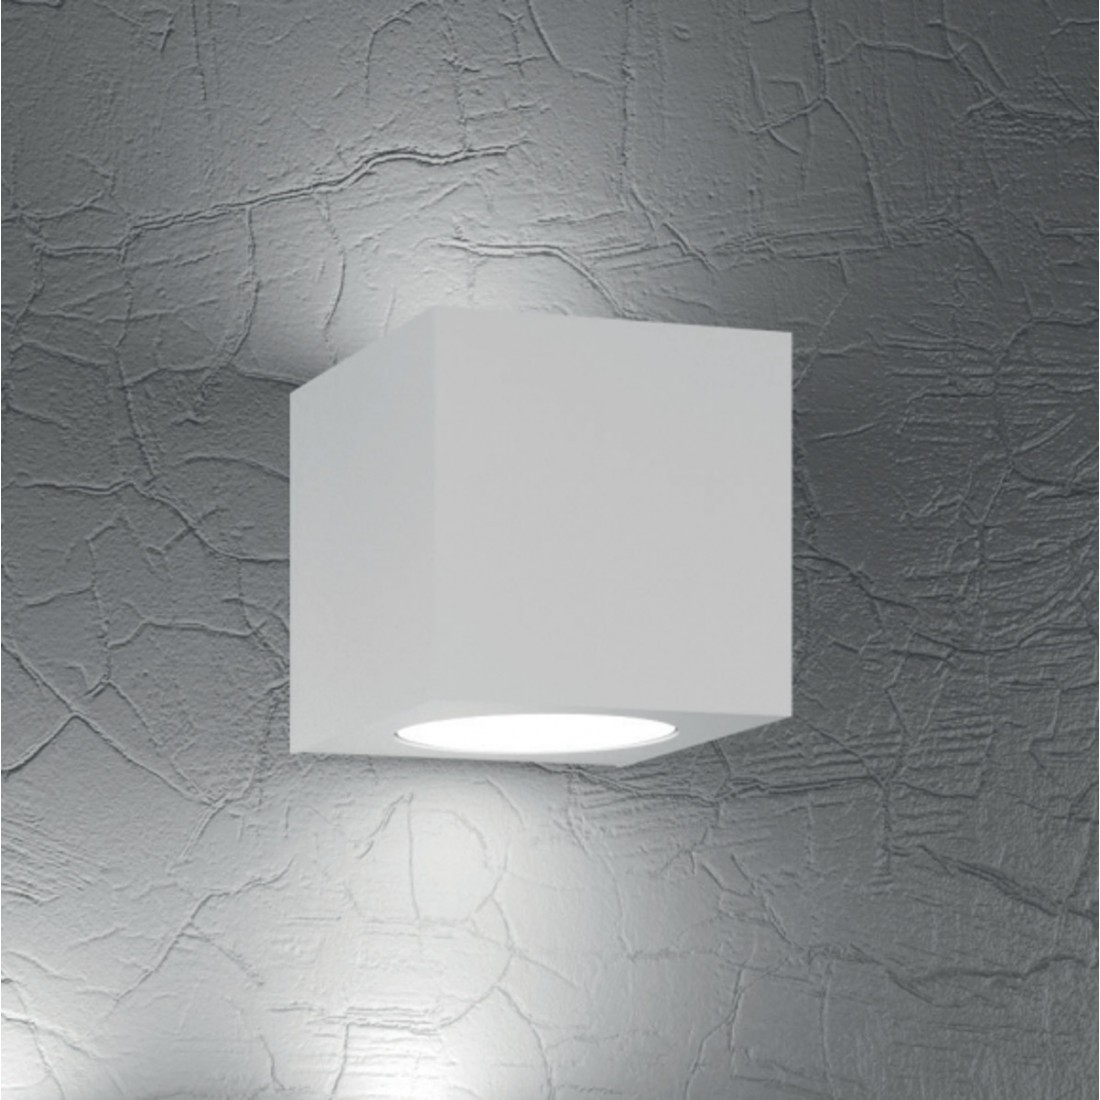 Cube en métal blanc à double émission lumineuse LED, deux lumières.